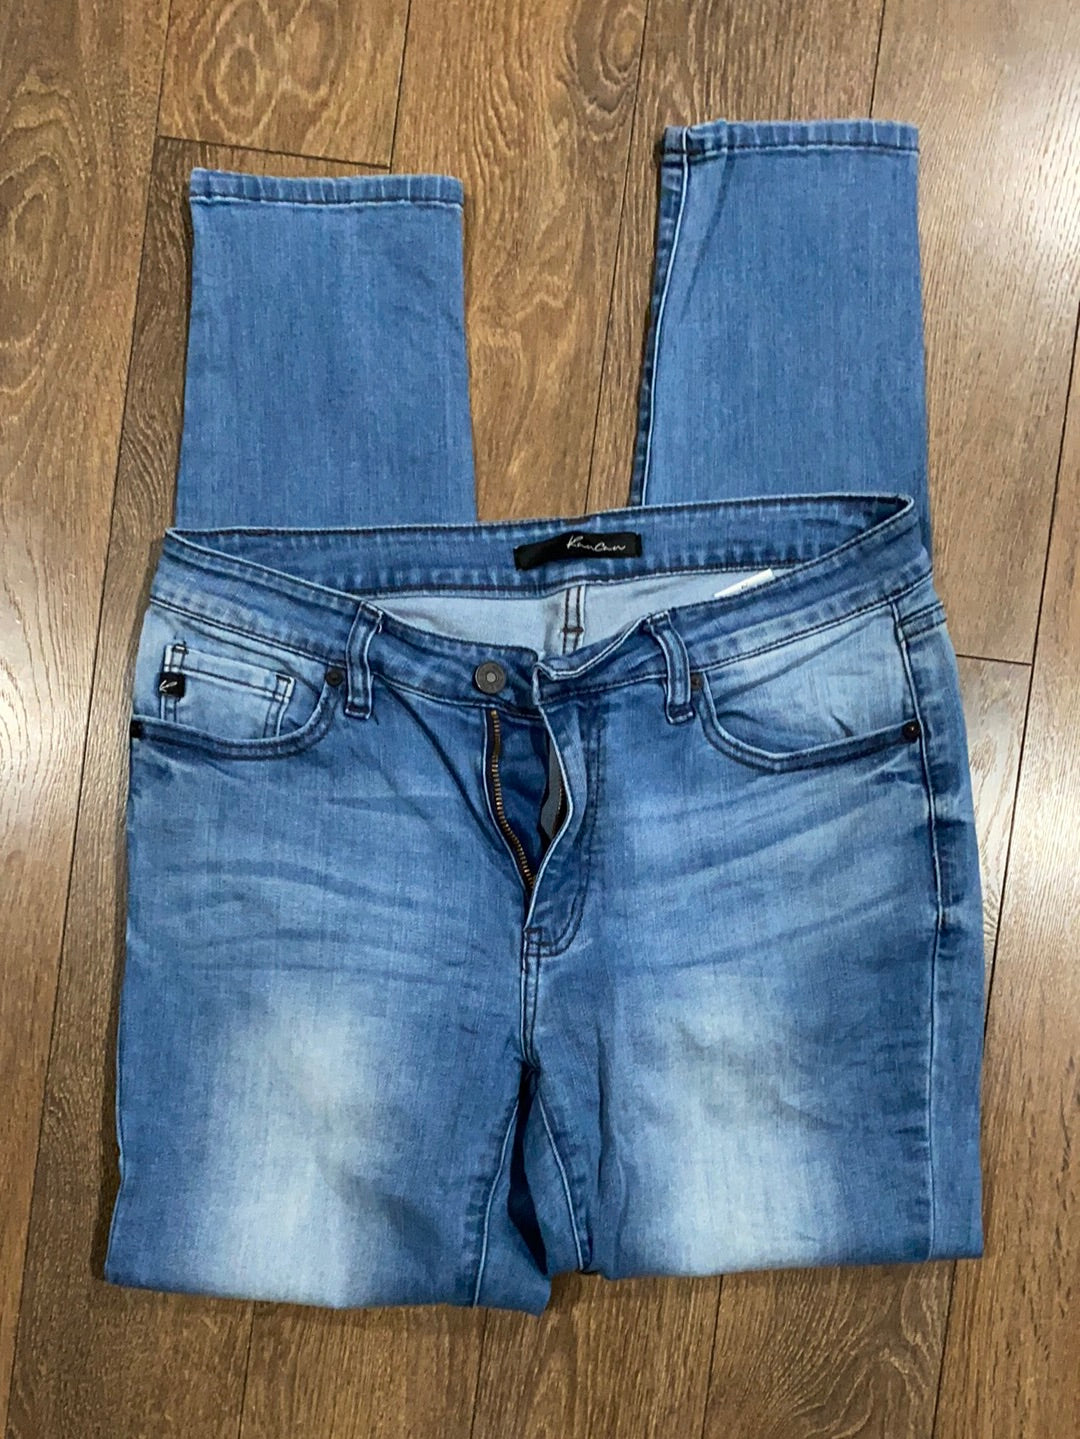 KANCAN denim jeans (29)